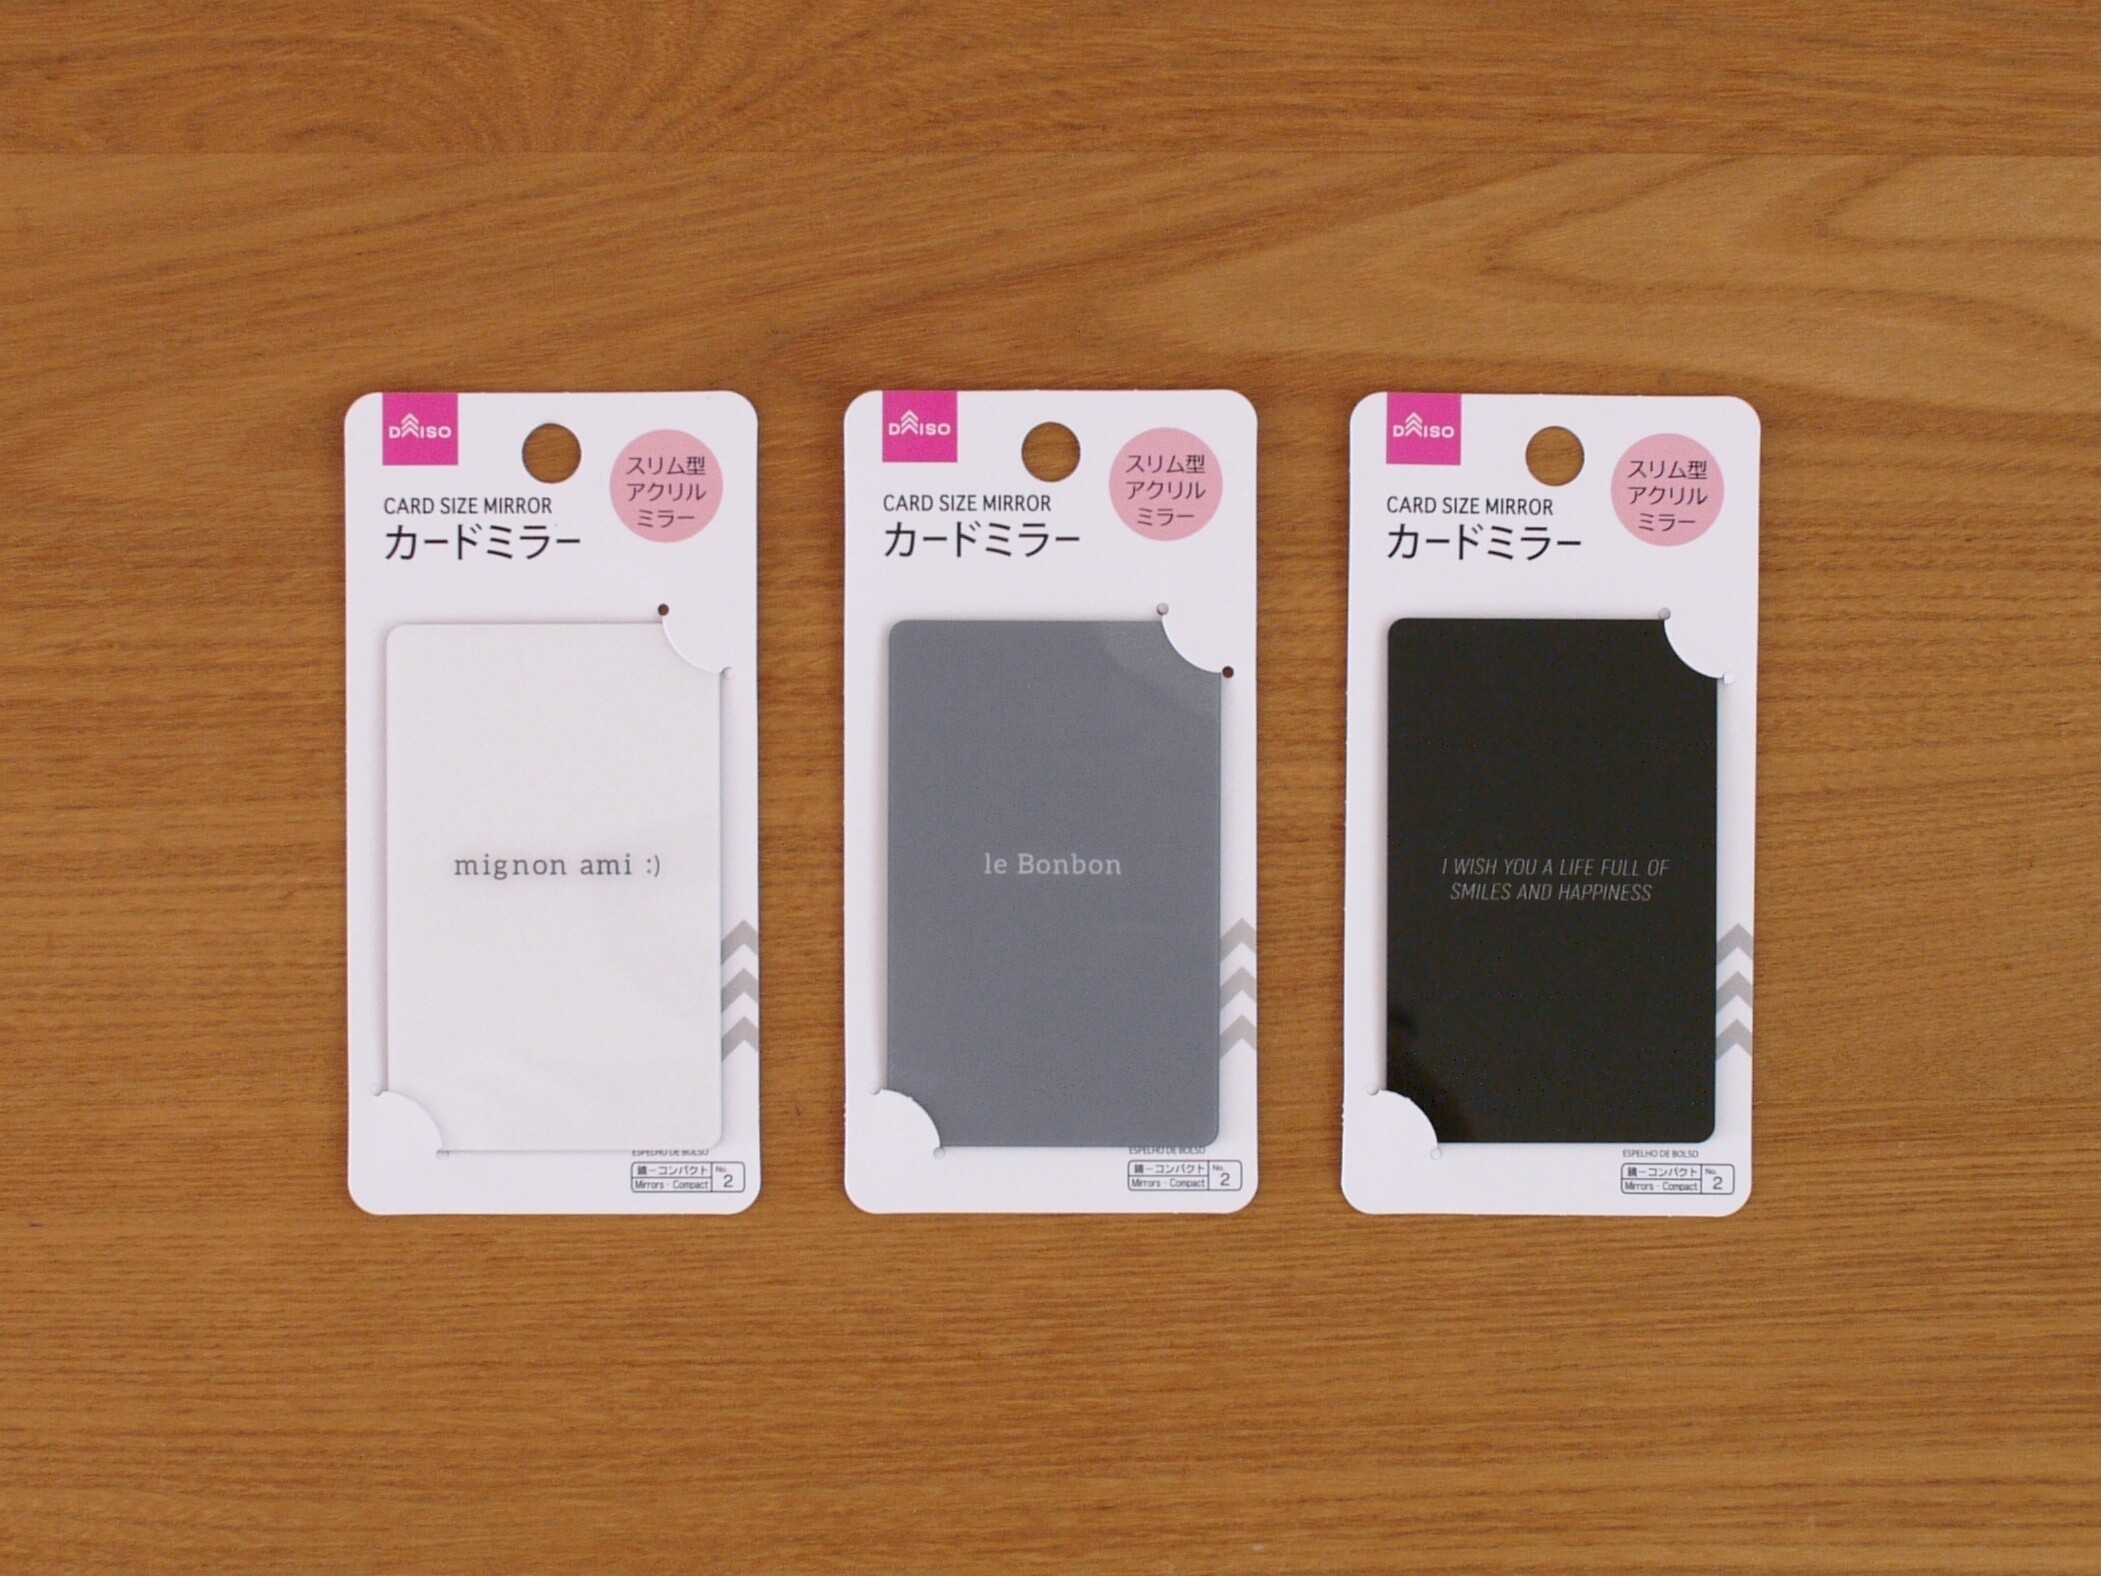 ダイソー カードサイズのミラーがおしゃれ お財布やカードケースに収納できて便利 Usagi Works Powered By ライブドアブログ